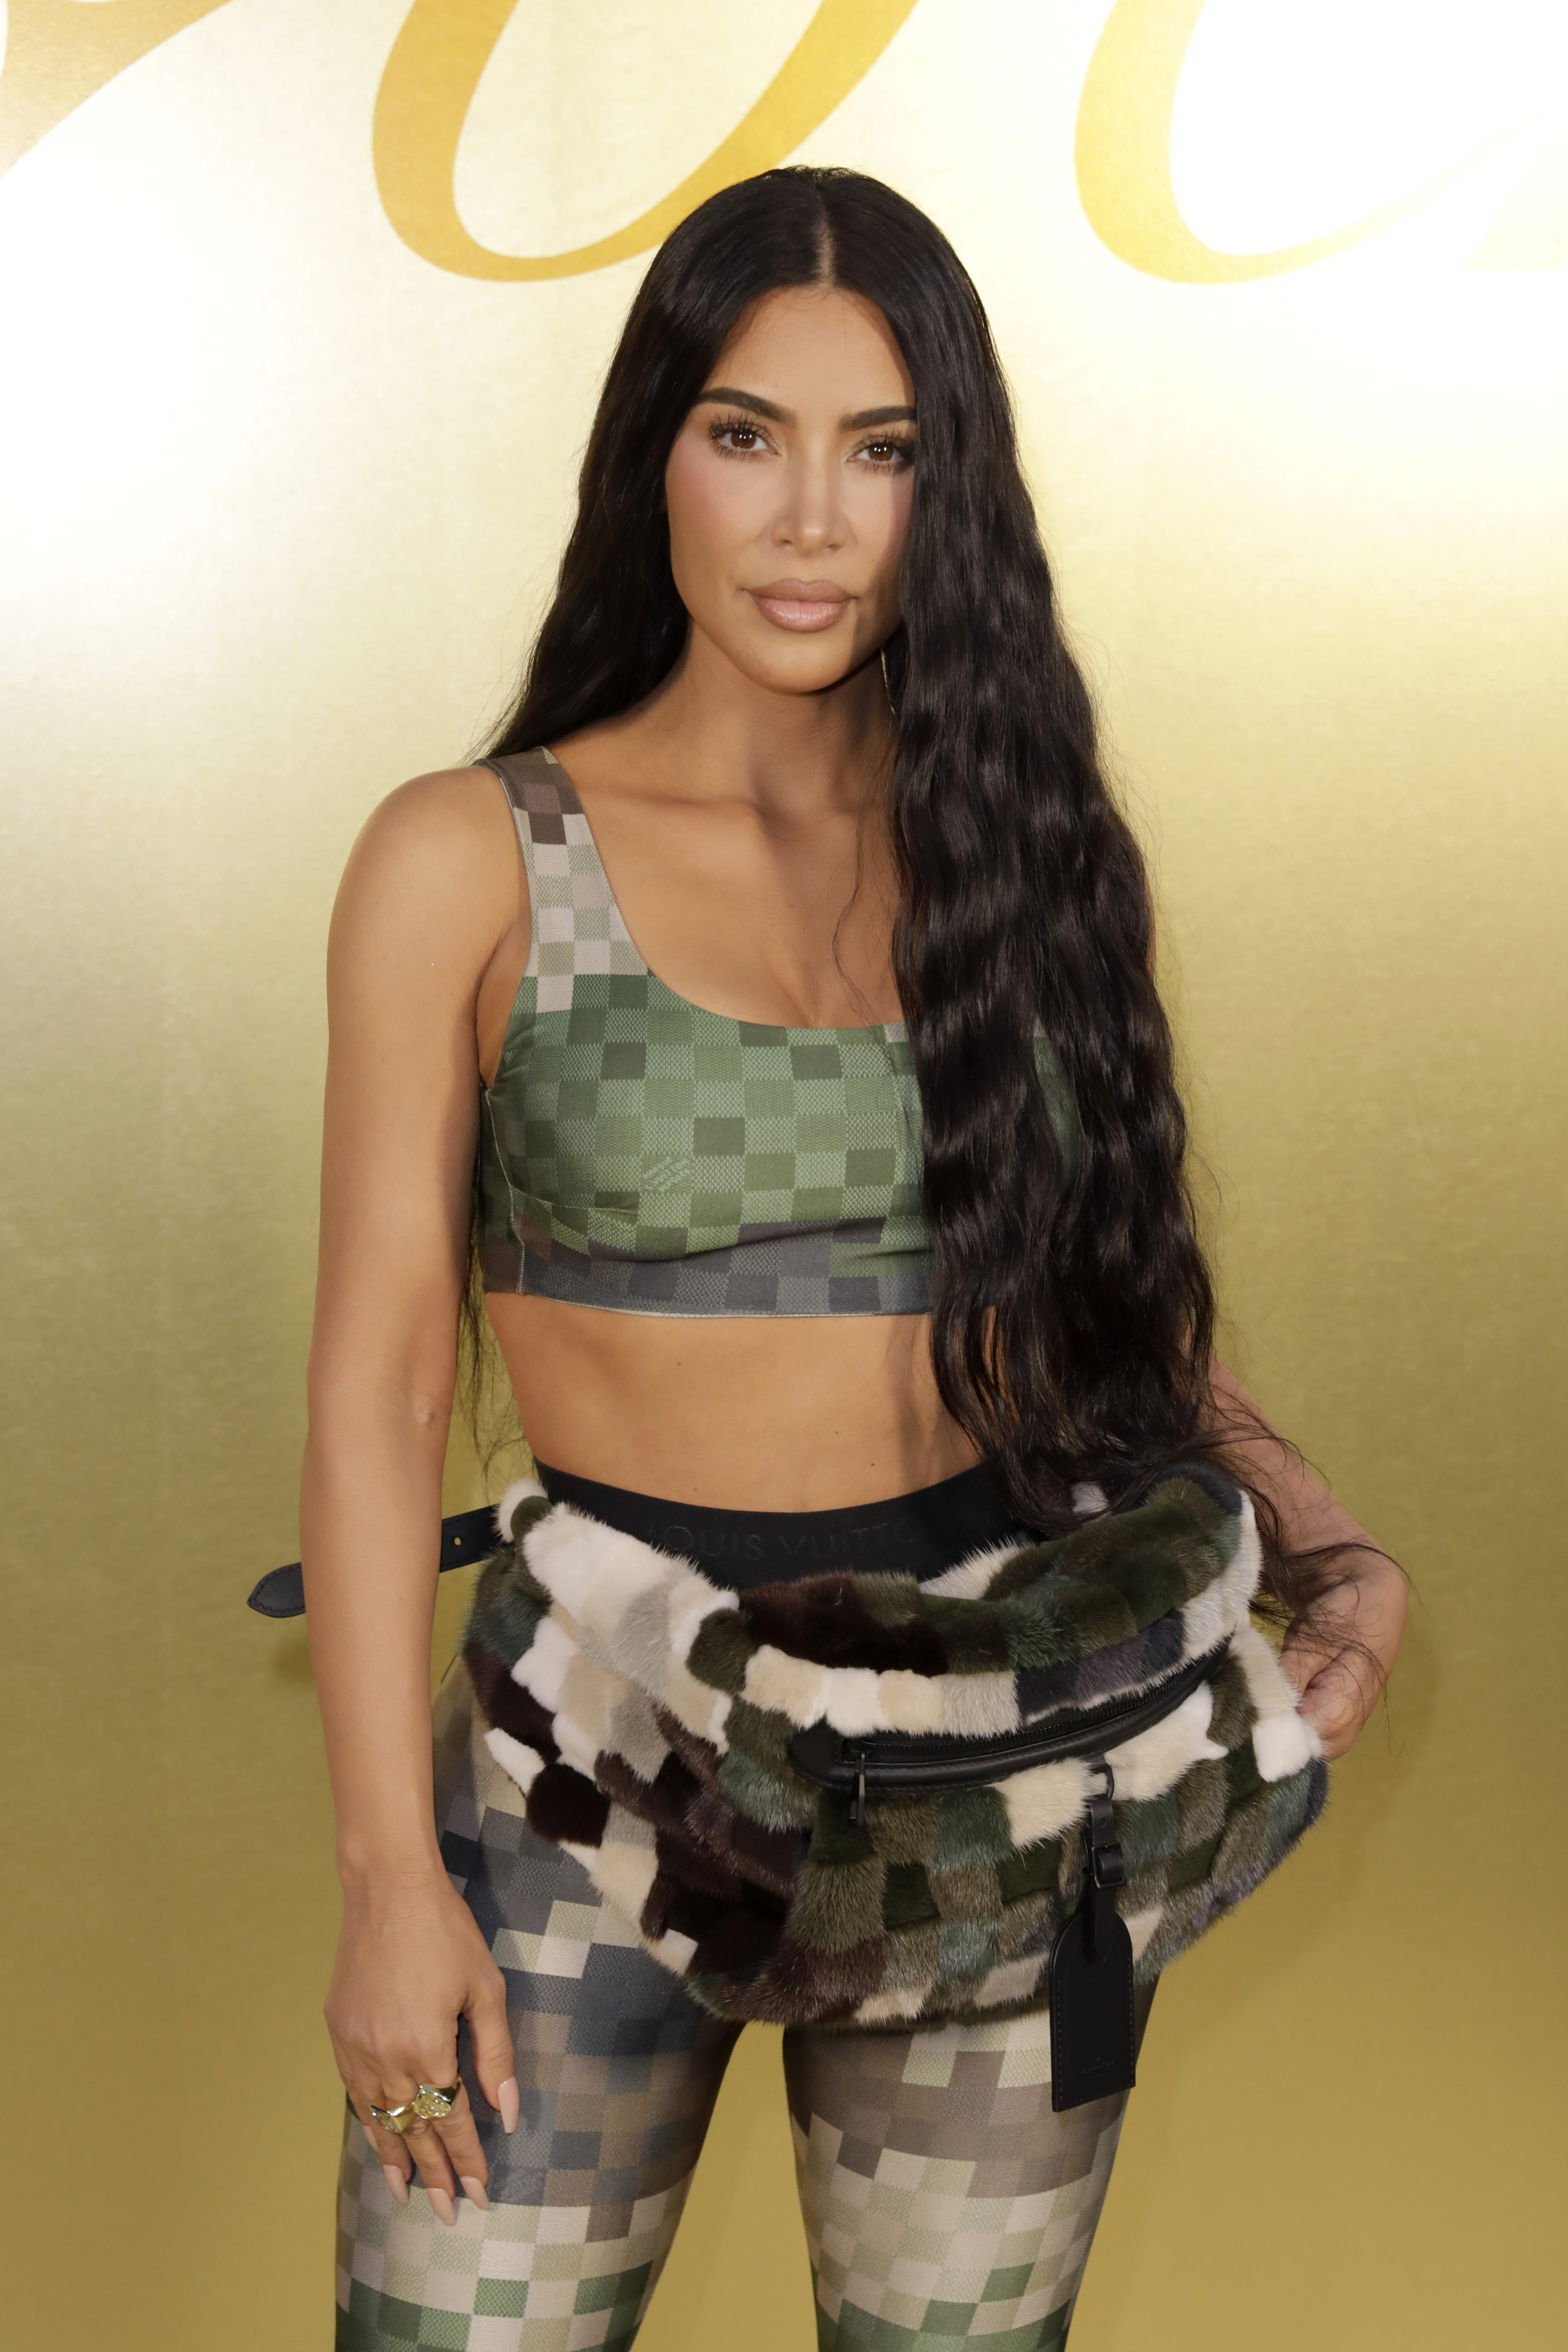 Kim prahlte in den sozialen Medien mit den teuren Taschen und fügte sie ihrer Website Kardashian Kloset hinzu